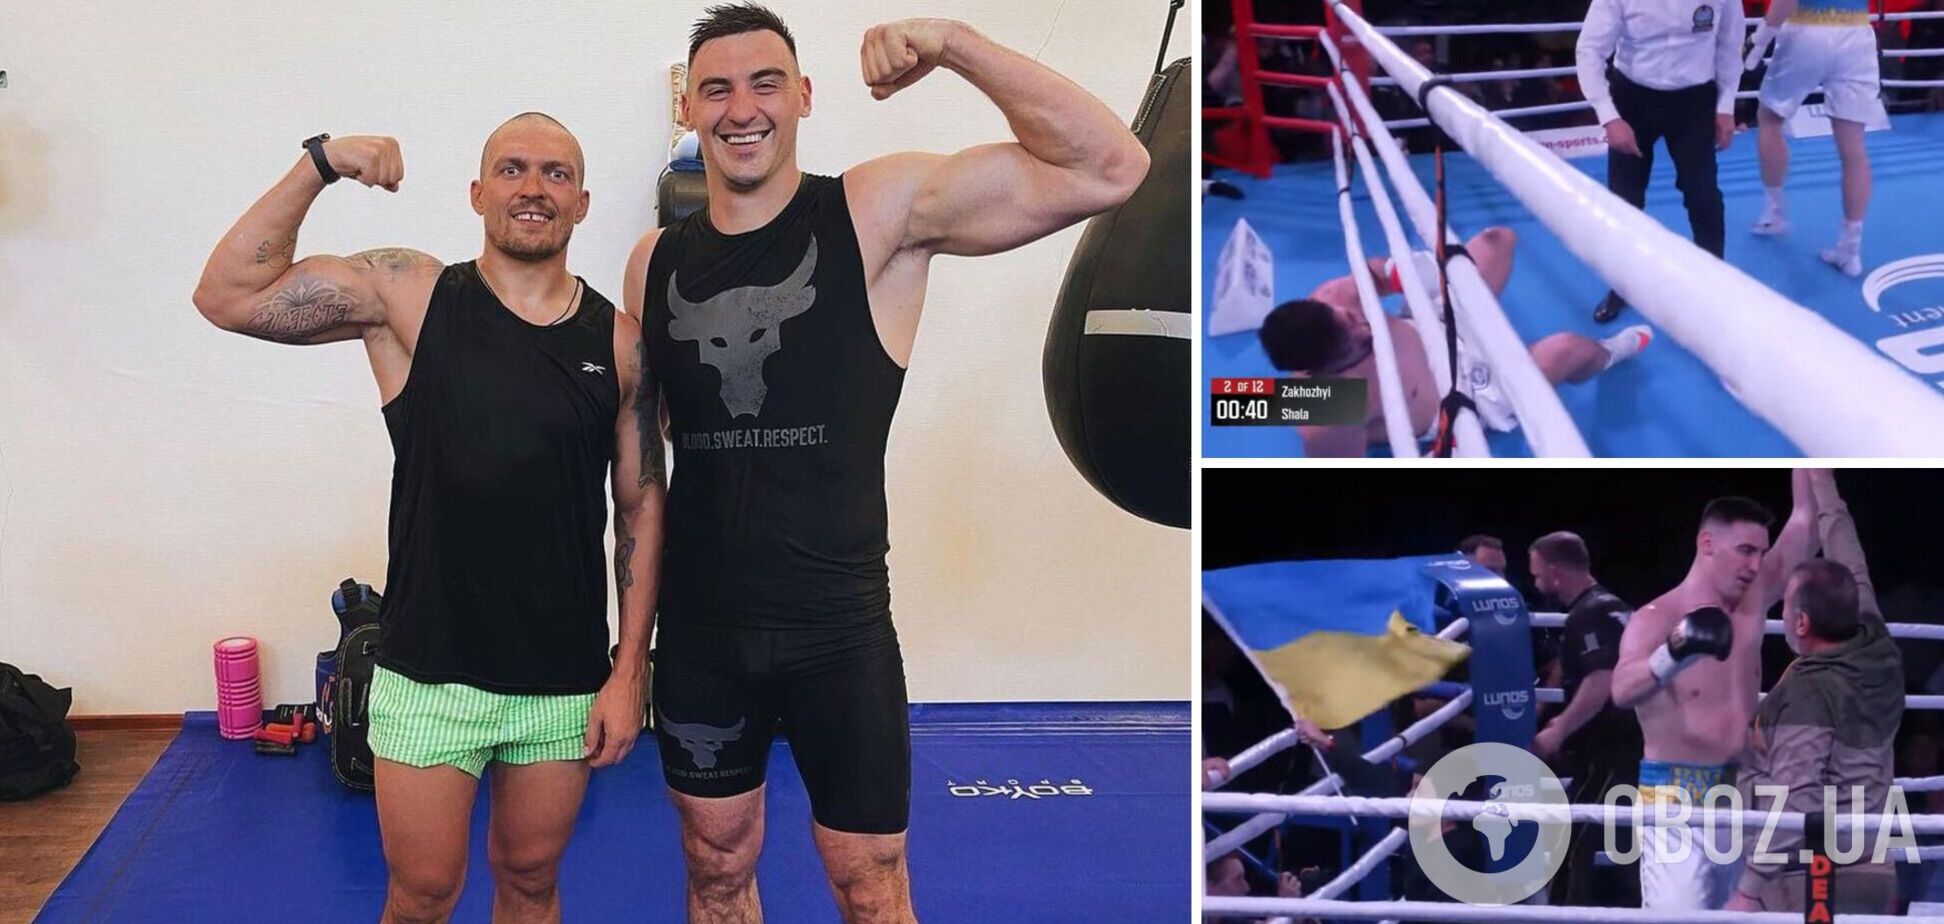 Непобедимый украинский супертяж выиграл чемпионский бой нокаутом, от которого соперник улетел за канаты. Видео